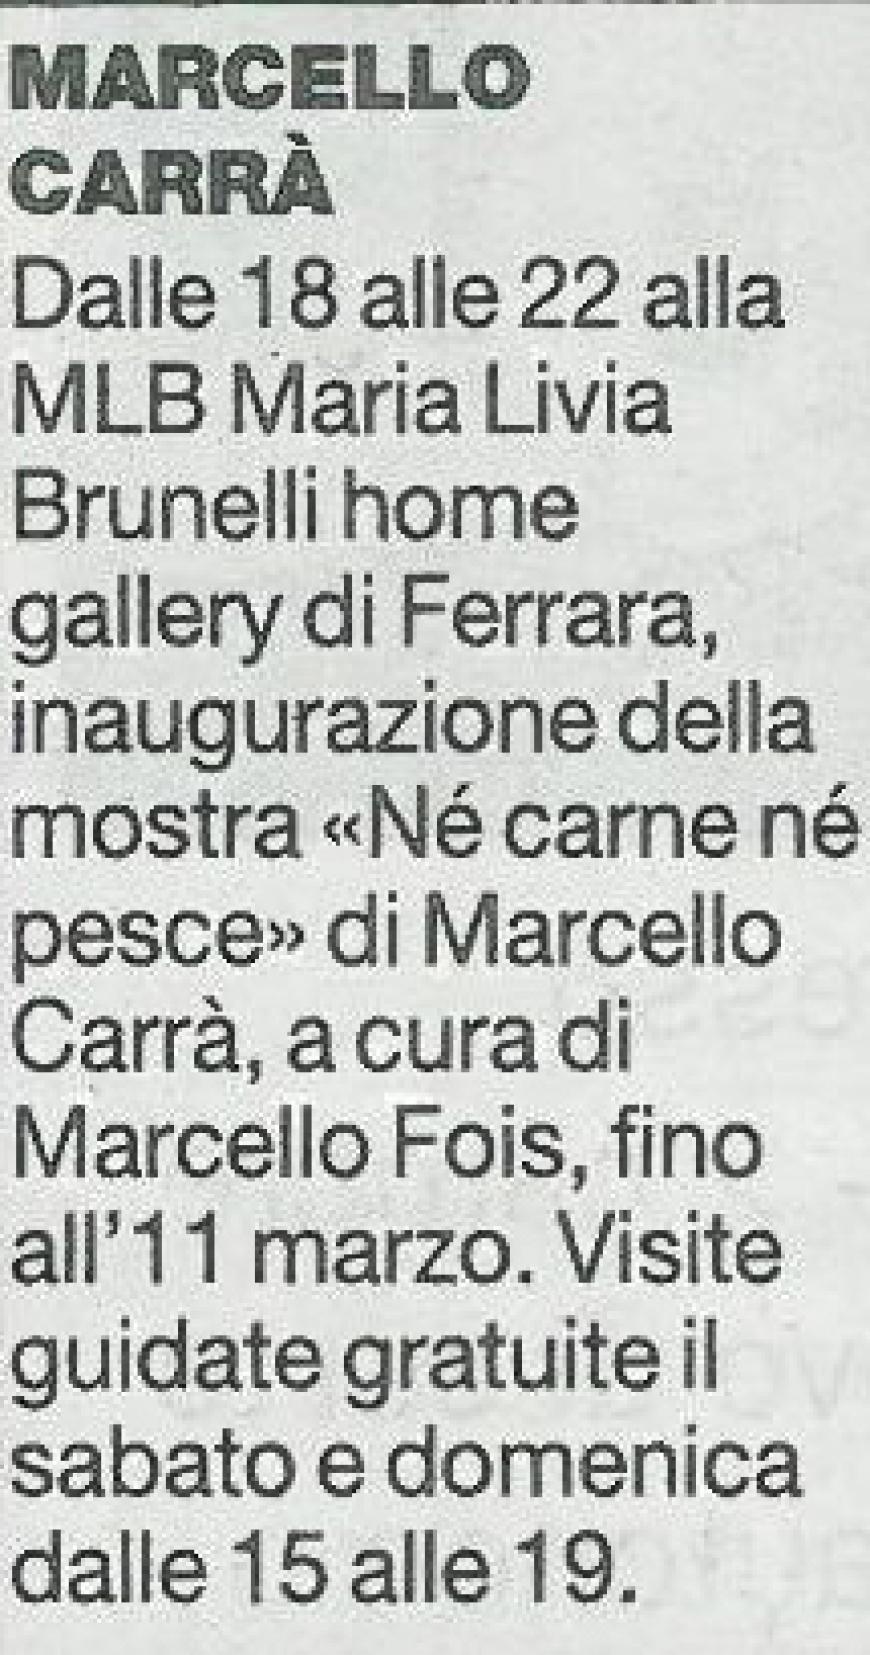 La Repubblica, 21 gennaio 2012